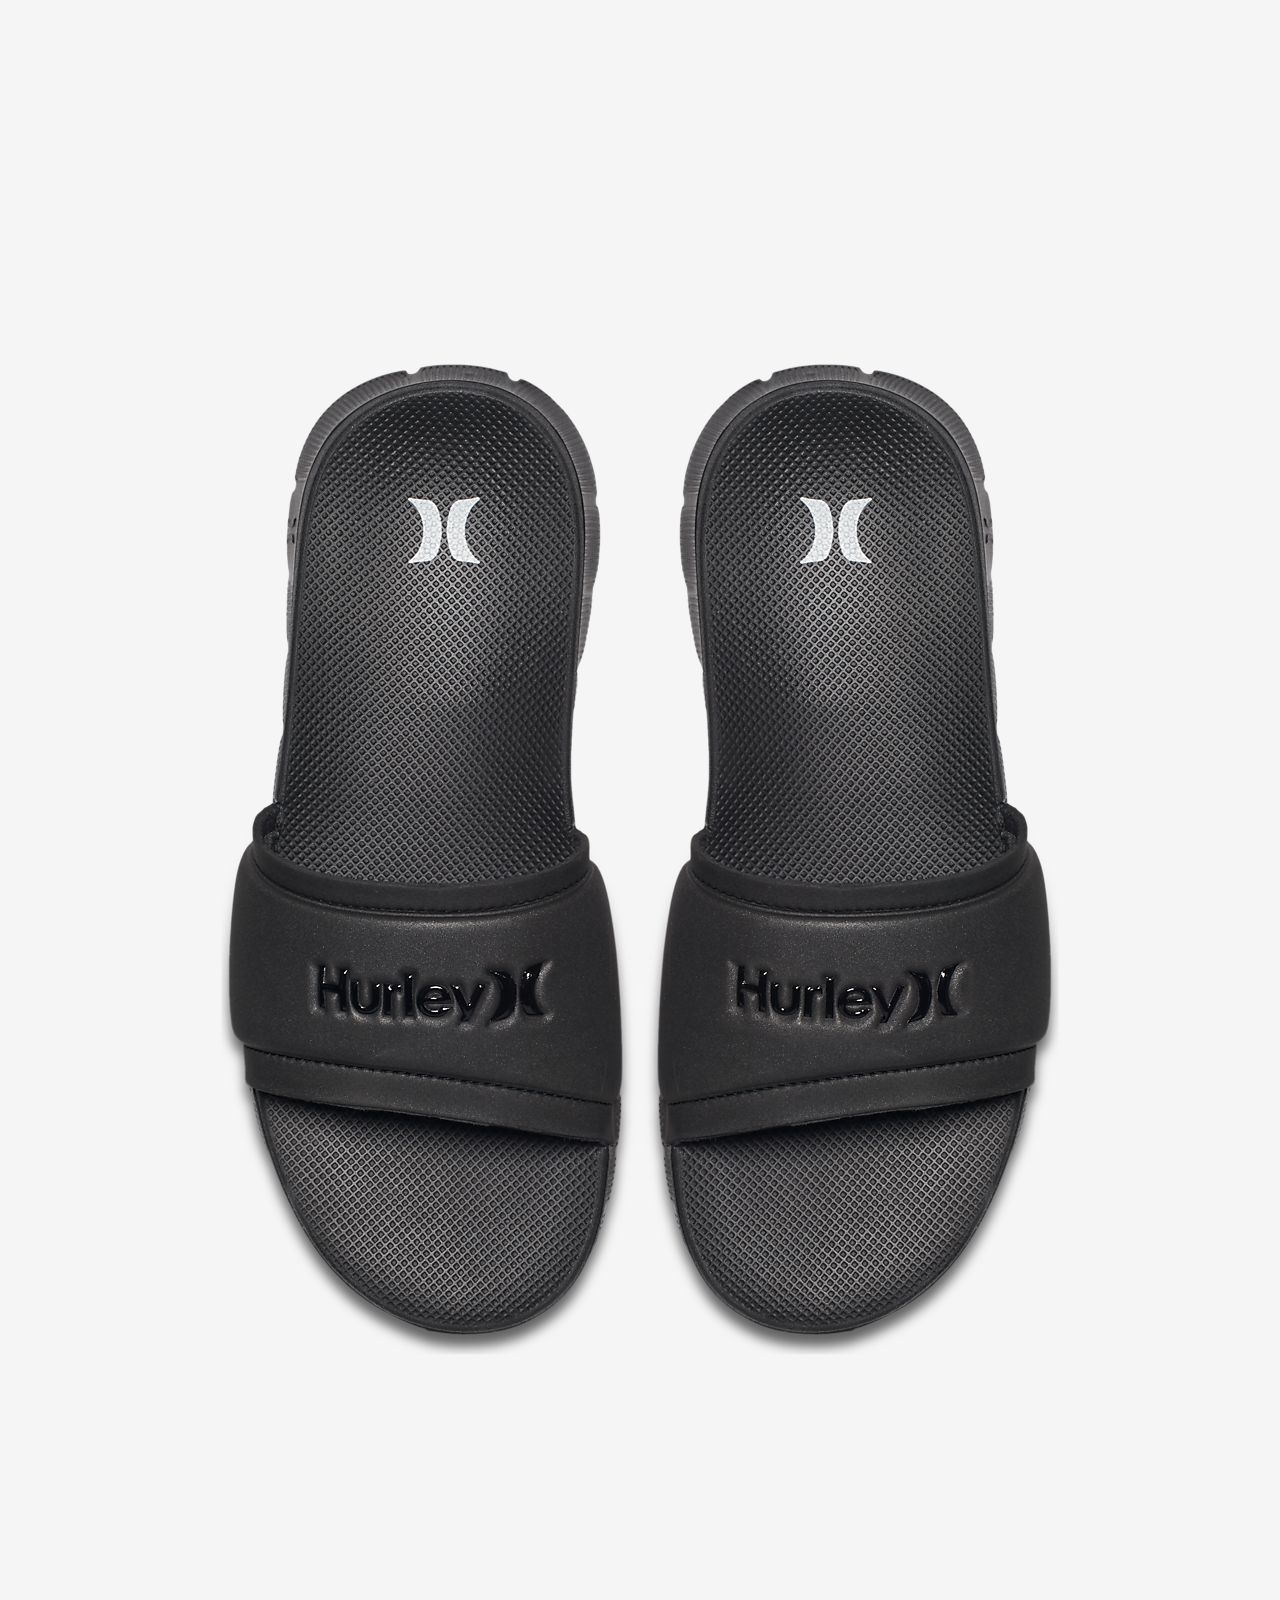 hurley womens flip flops